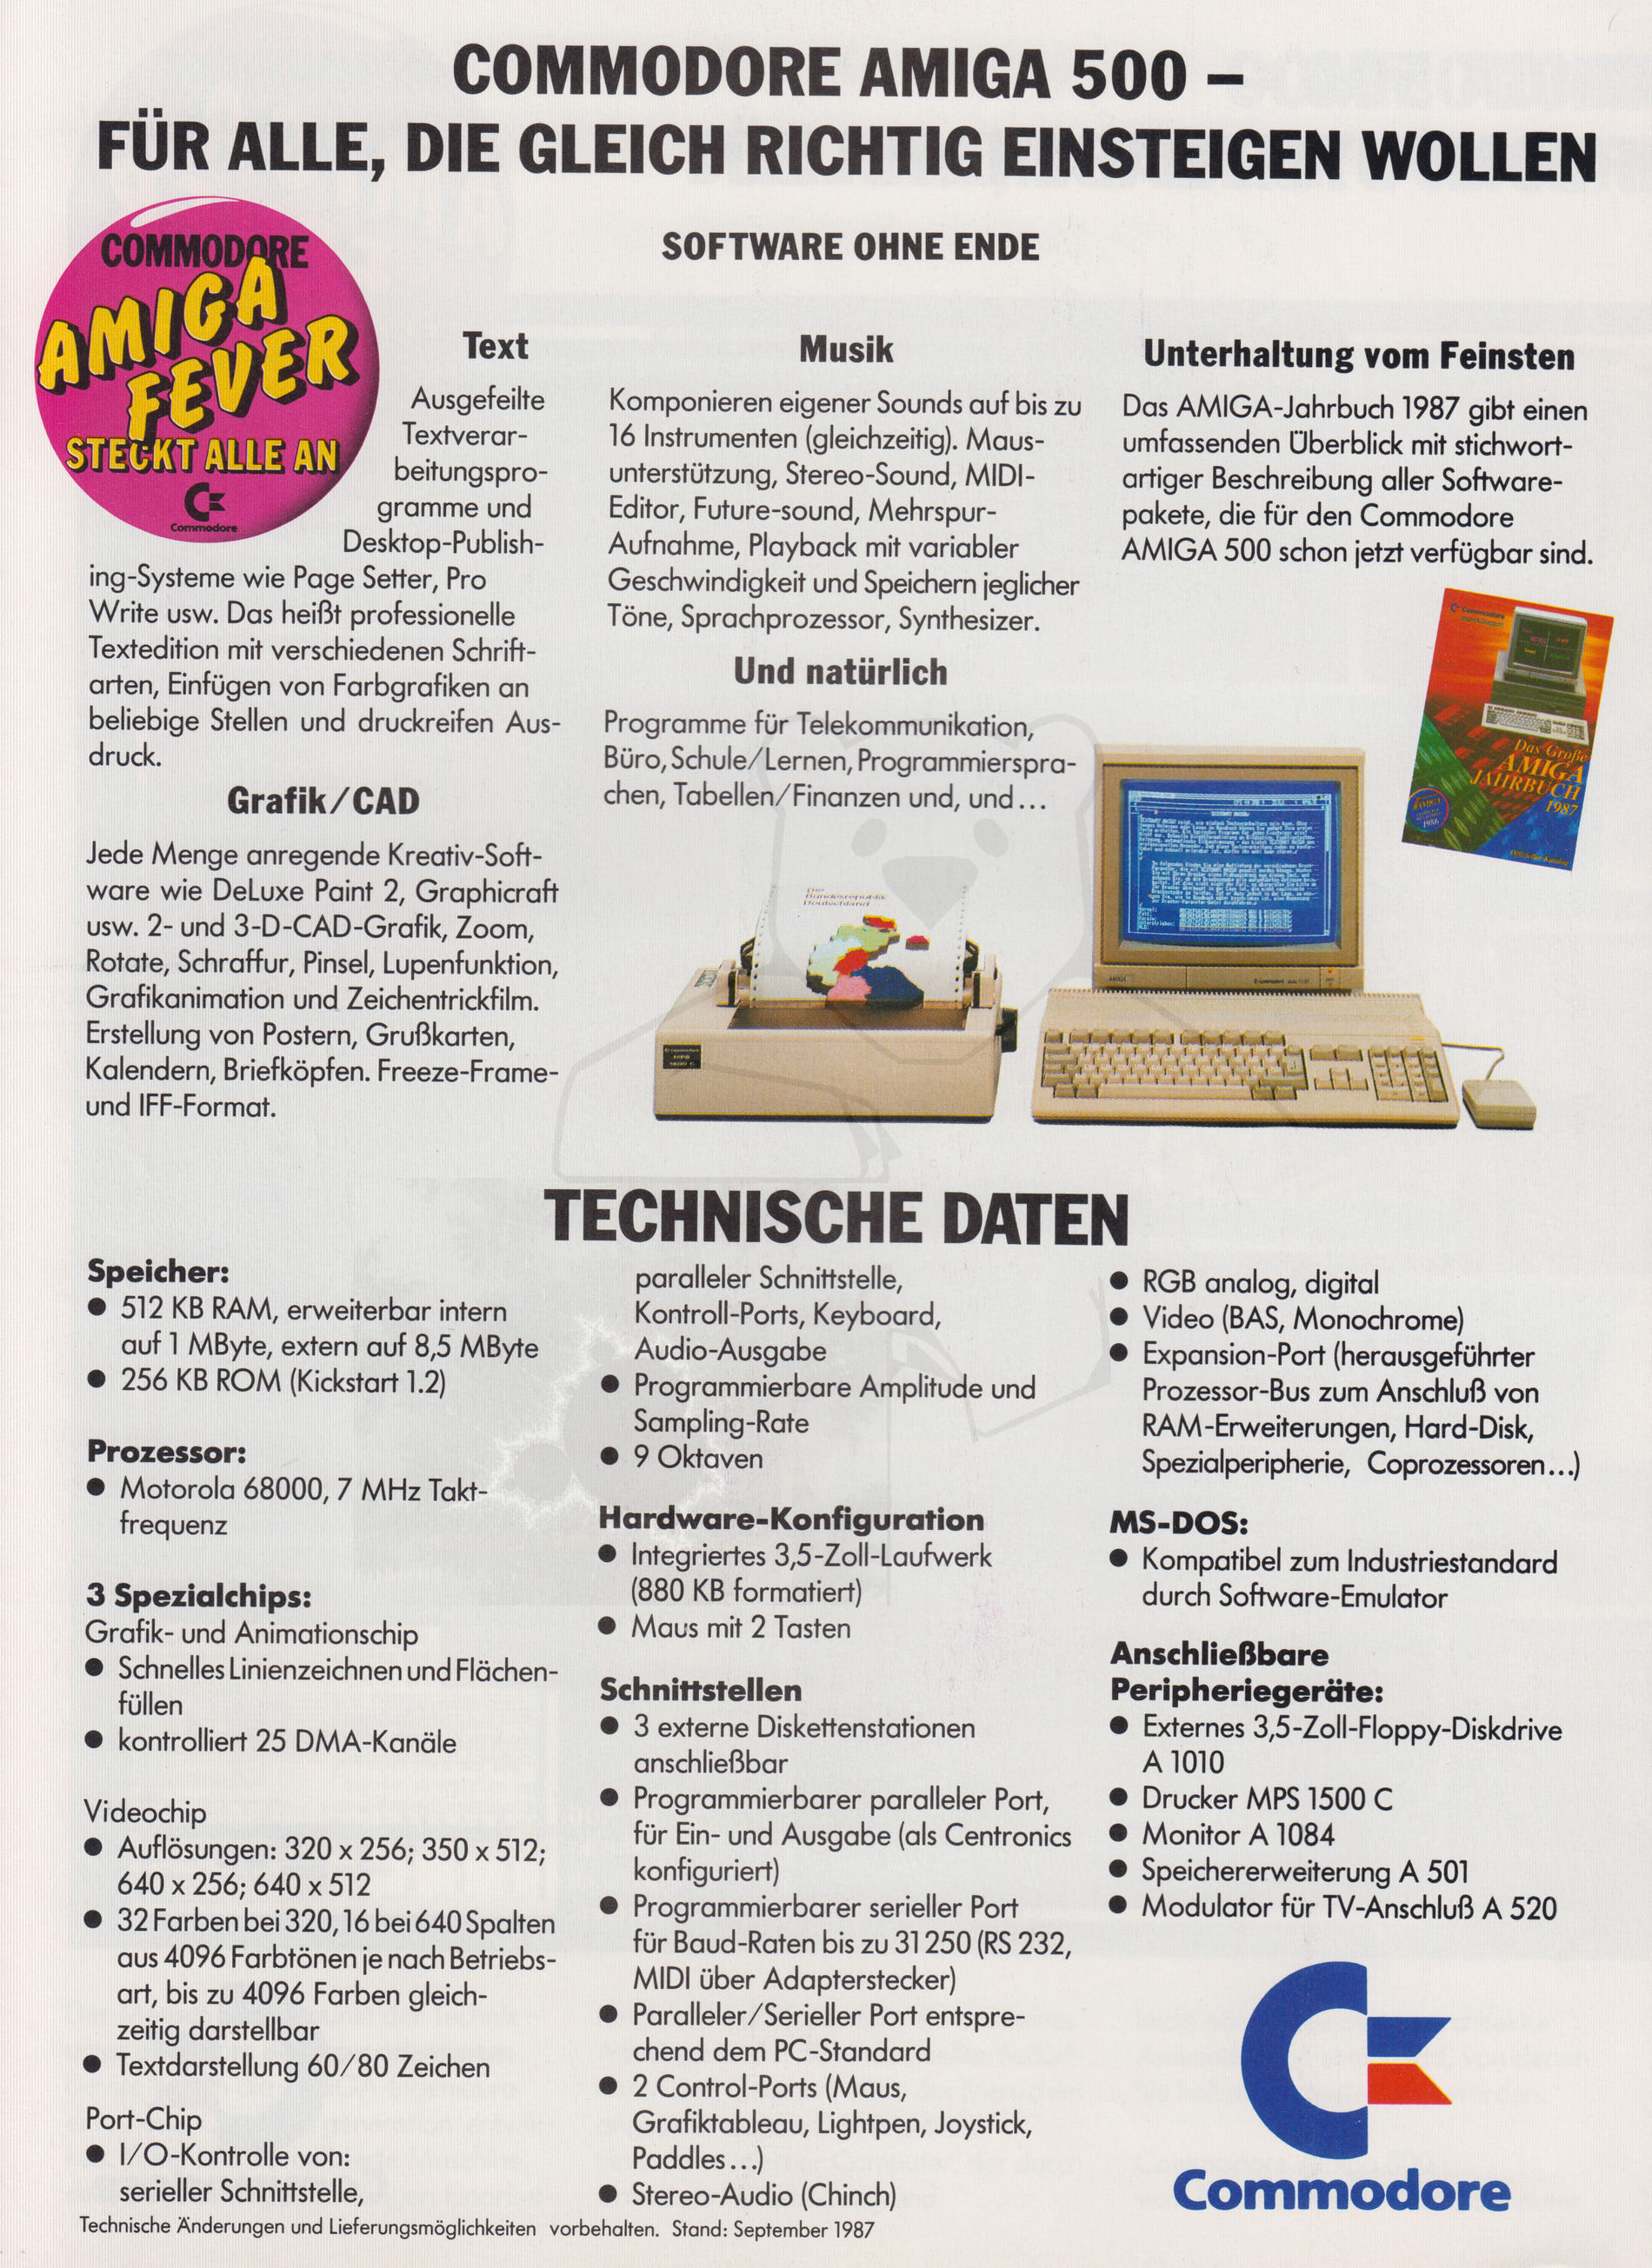 Commodore Werbeflyer "Commodore Amiga Fever", Seite 4